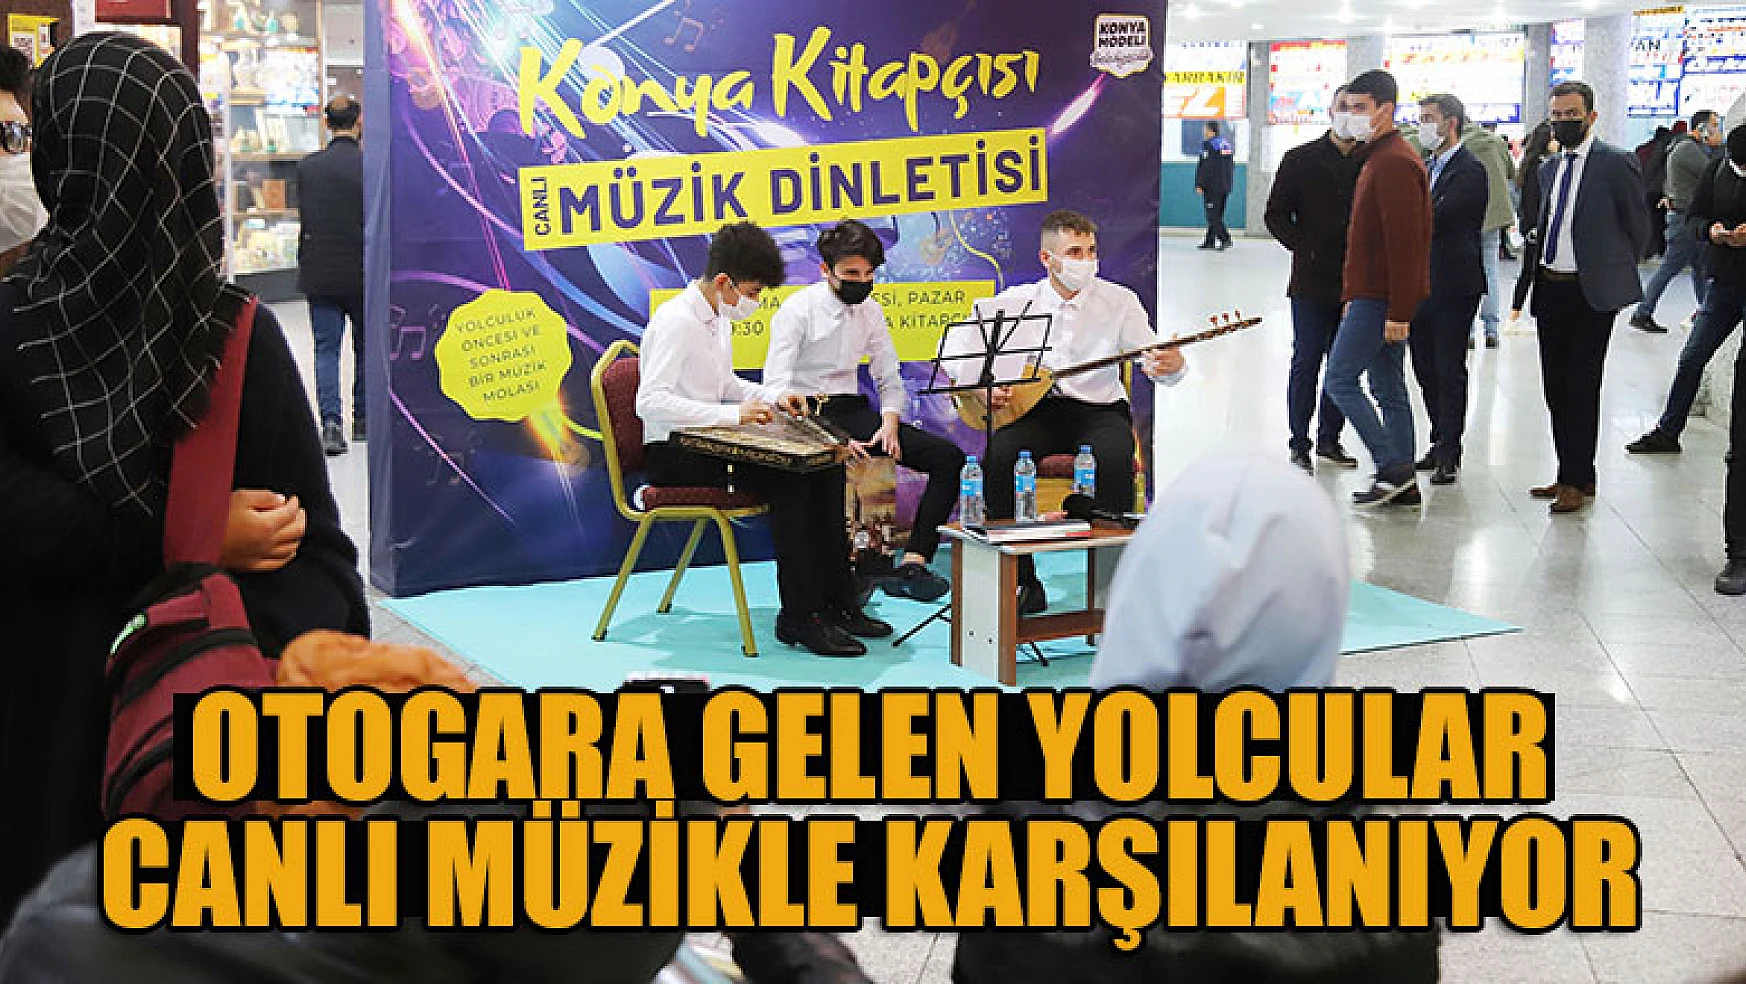 Konya Büyükşehir otogara gelen yolcuları canlı müzikle karşılıyor